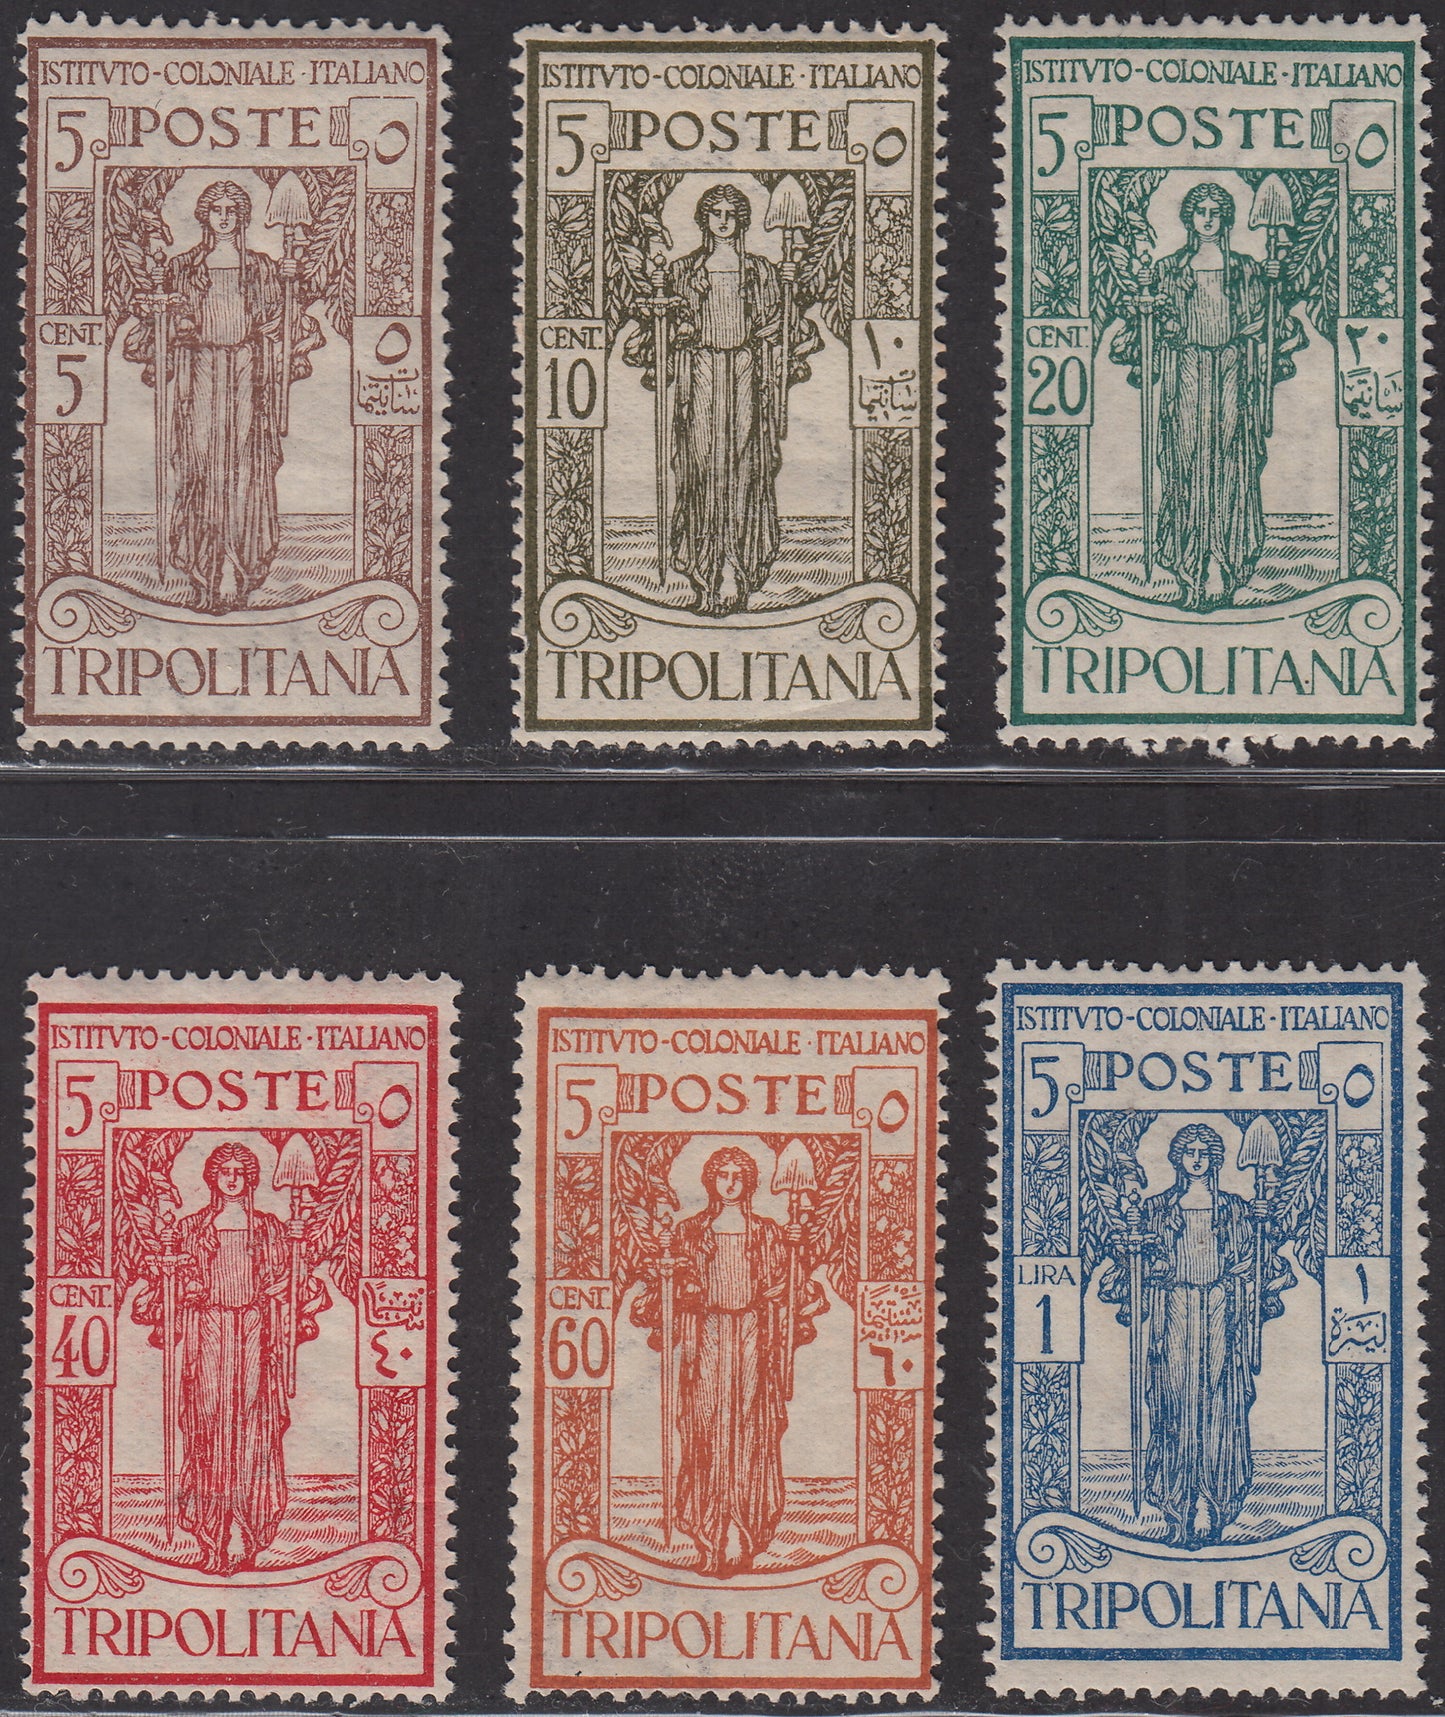 Trip10 - 1926 - Pro Istituto Coloniale Italiano, serie completa nuova con gomma originale (33/38